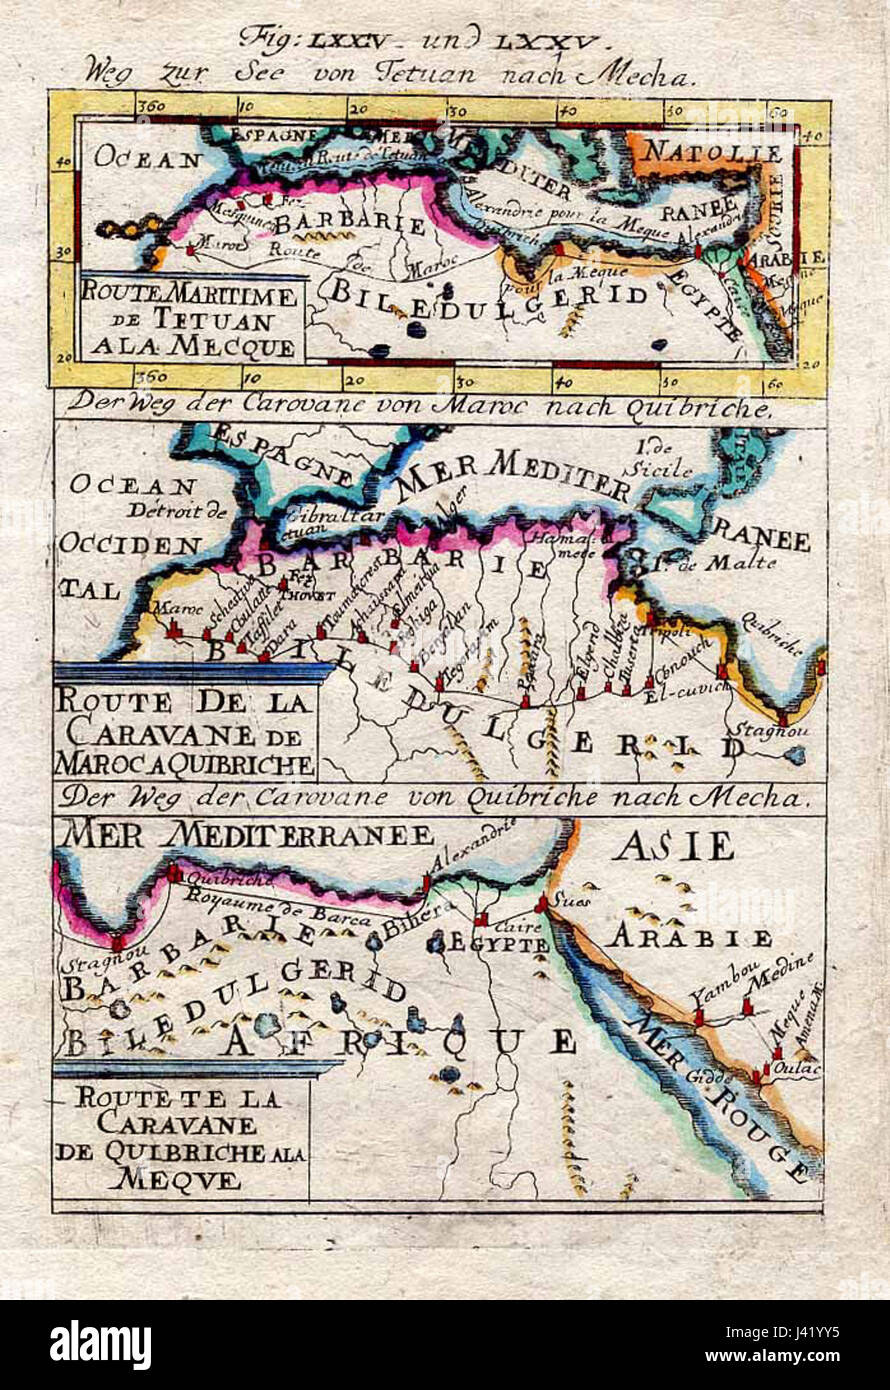 Carte des routes caravanières à La Mecque, 1683 Banque D'Images